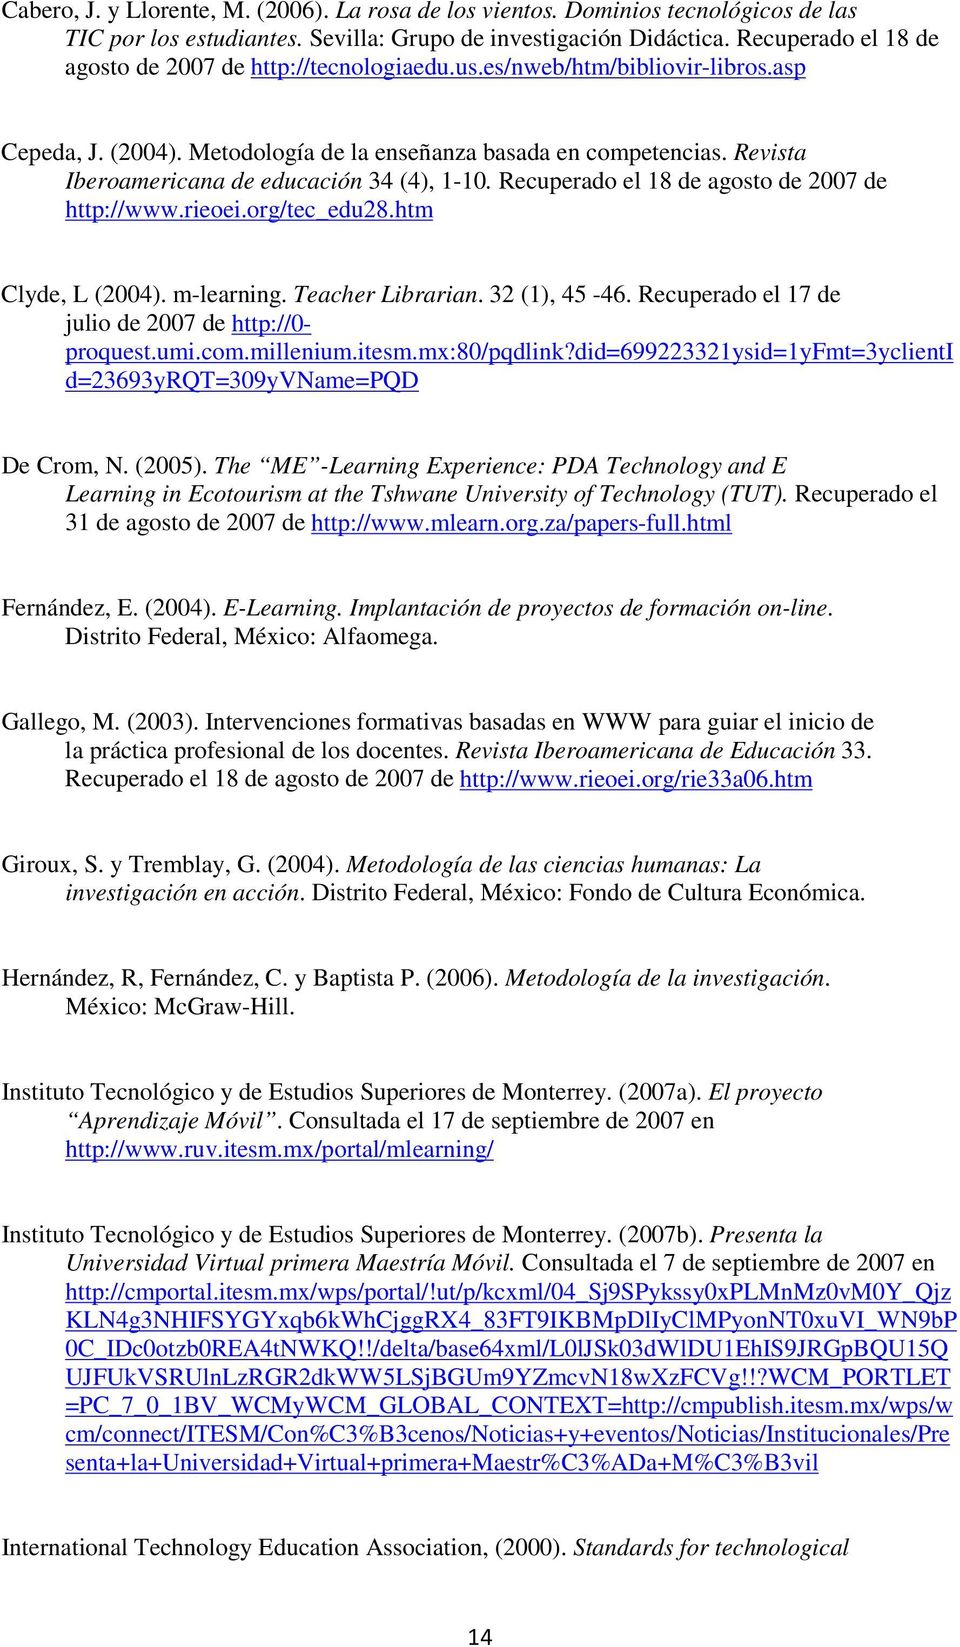 Revista Iberoamericana de educación 34 (4), 1-10. Recuperado el 18 de agosto de 2007 de http://www.rieoei.org/tec_edu28.htm Clyde, L (2004). m-learning. Teacher Librarian. 32 (1), 45-46.